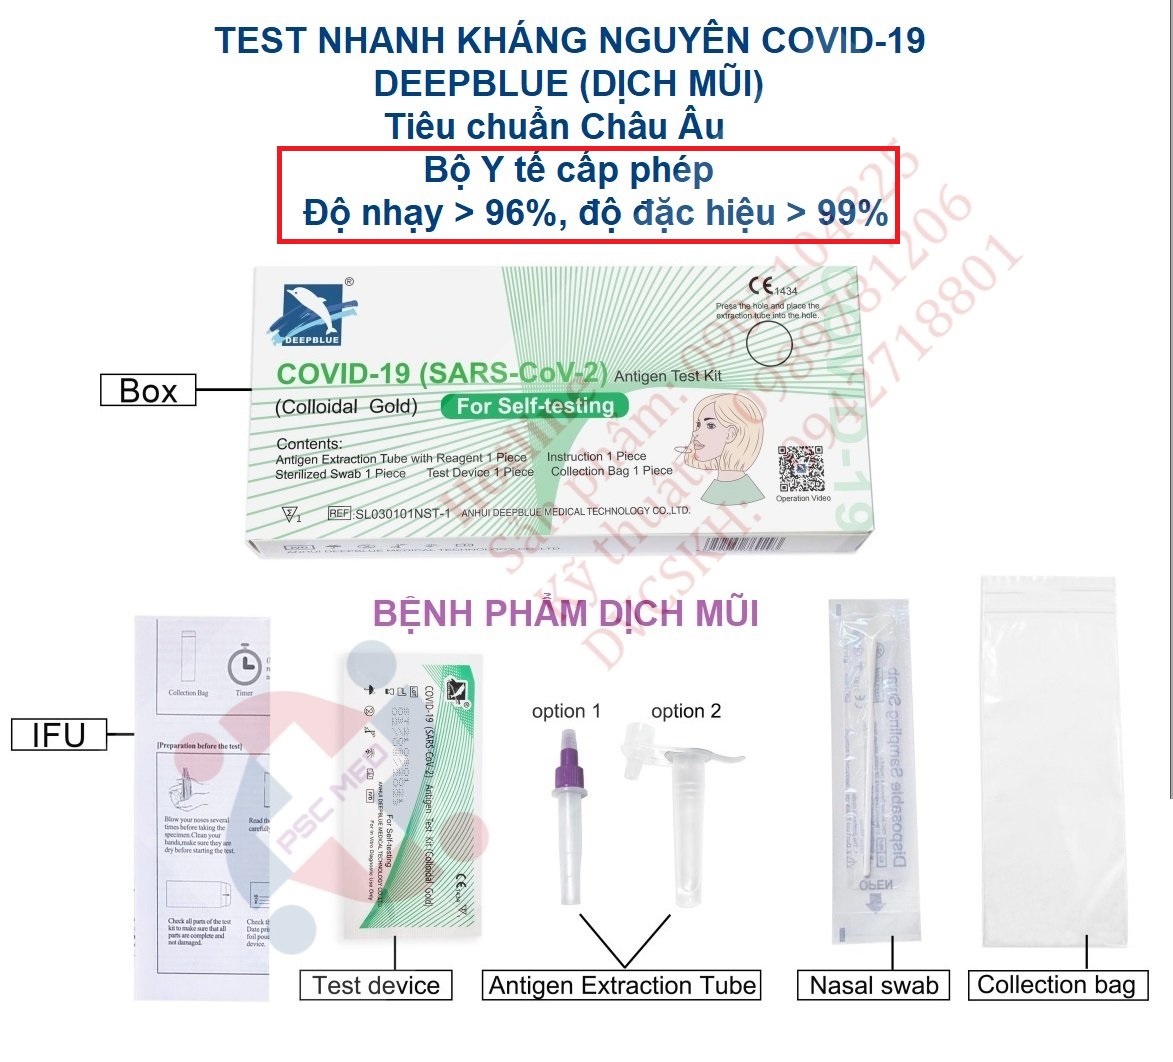 Test nhanh Covid -19 ANHUI DEEPBLUE - Bệnh phẩm dịch mũi ngoáy nông thumbnail